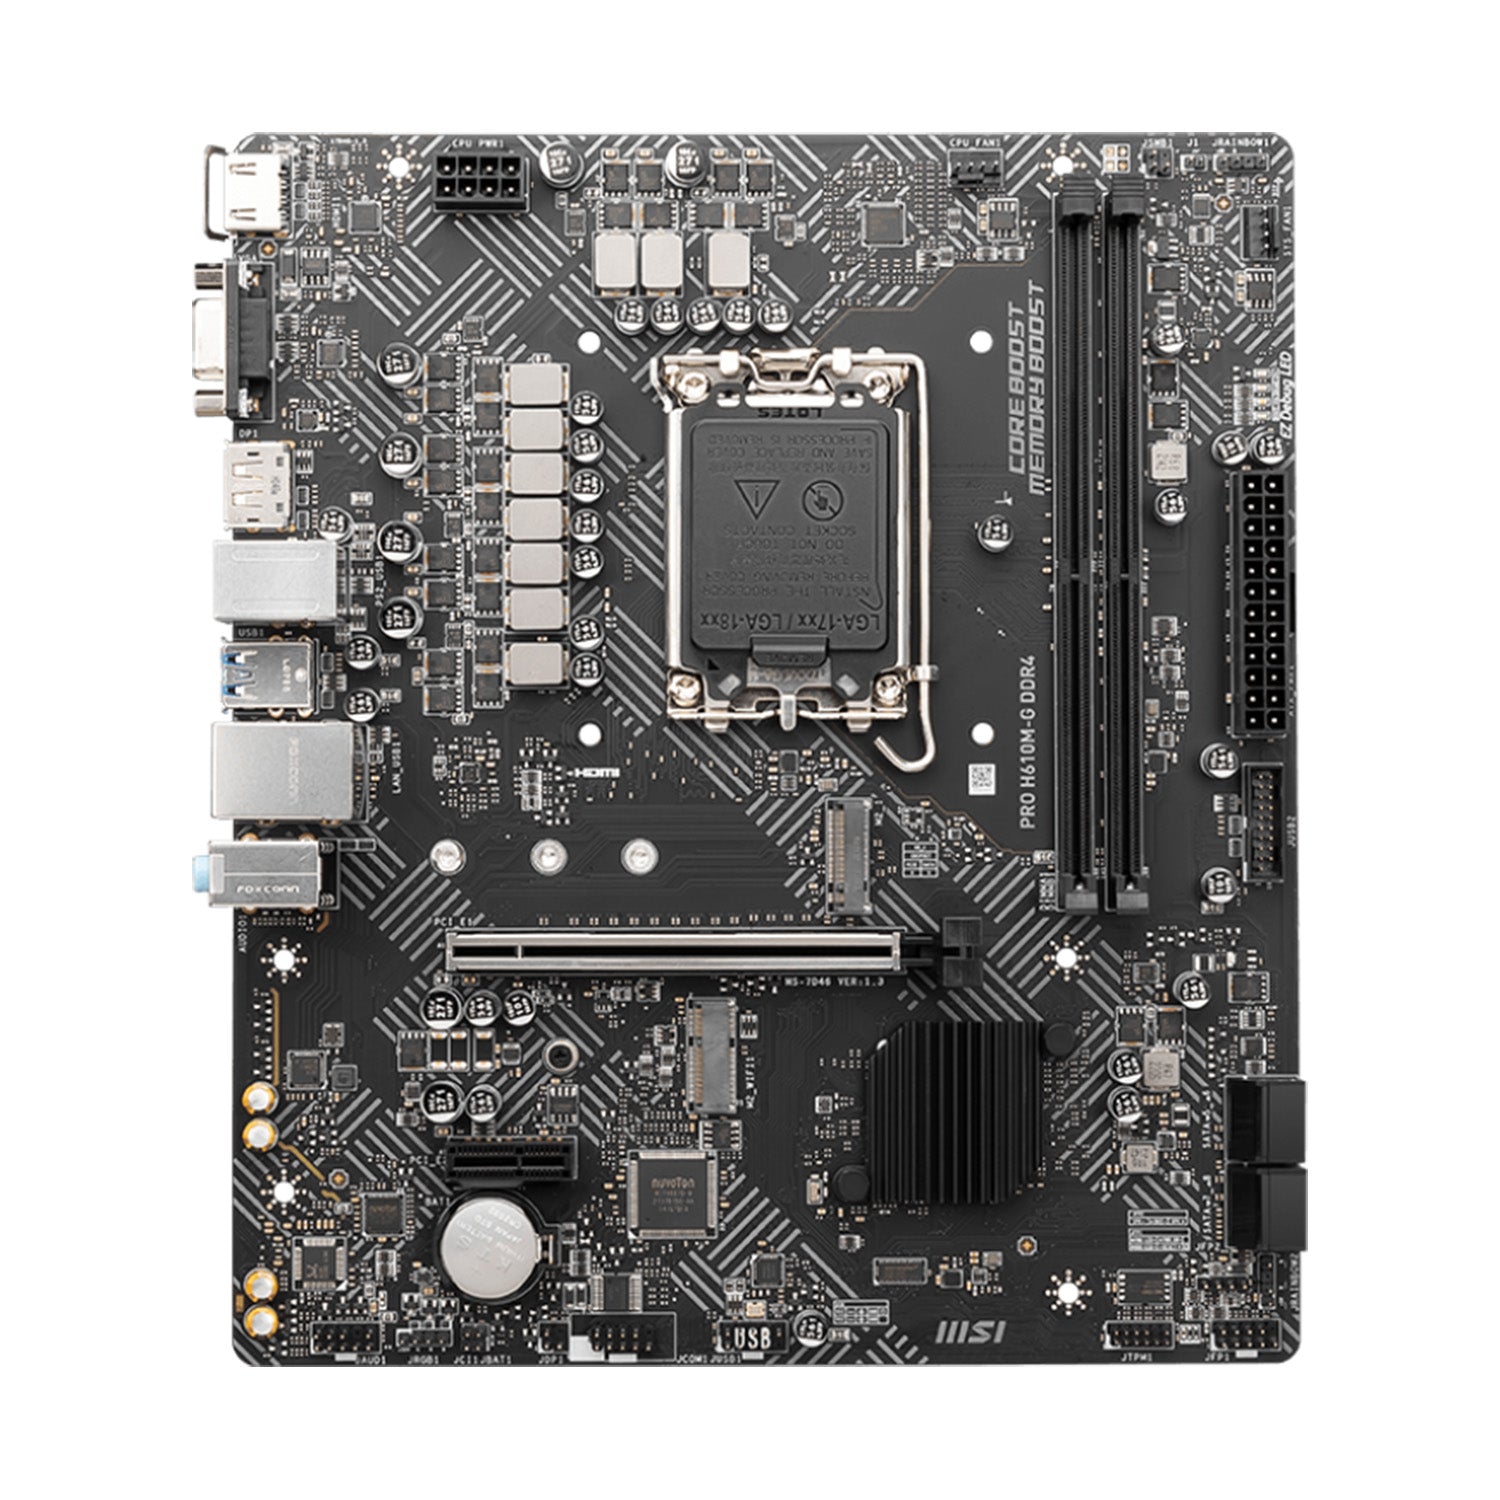 MSI PRO H610M-G DDR4 for Gaming and Professional Computing - Intel H610 SATA 6Gb/s, LGA 1700, M.2 Slots, PCIe 4.0, HDMI, Display port, VGA, Micro ATX Motherboard